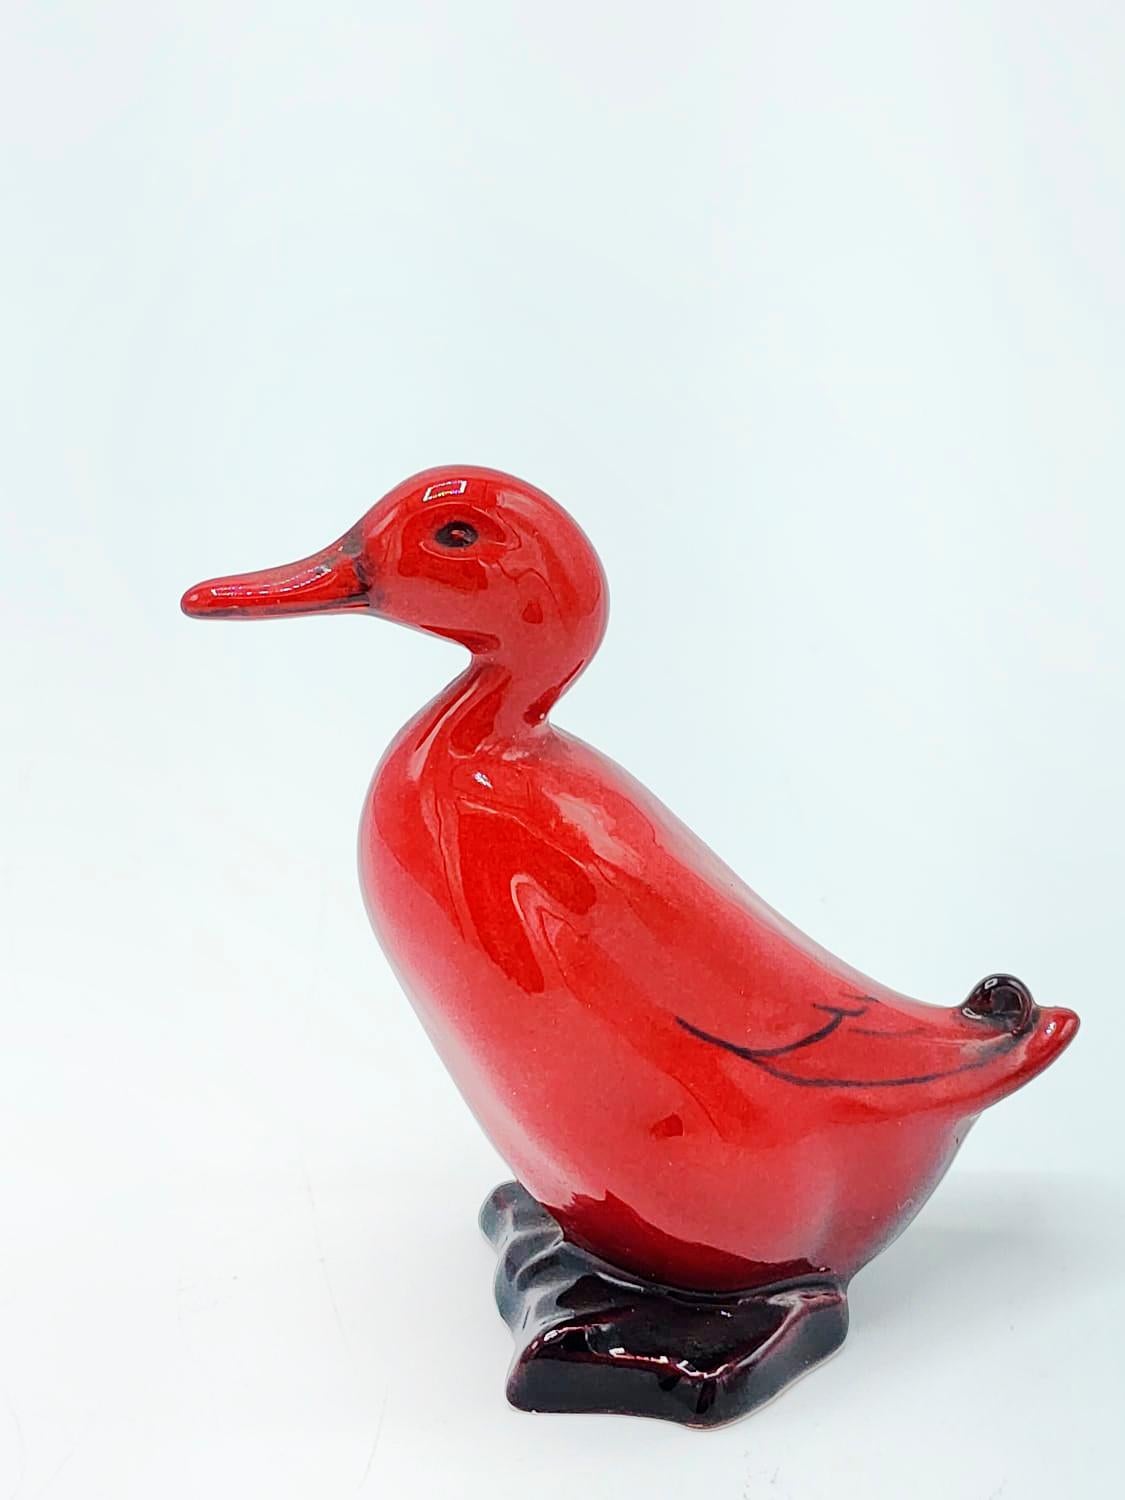 Figurine en porcelaine Royal Doulton fabriquée en Angleterre.
Figure de canard en flamme rouge et noire
Mesures :
Hauteur : 6 centimètre
Longueur : 5.5 centimètres
Profondeur : 2.5 centimètres